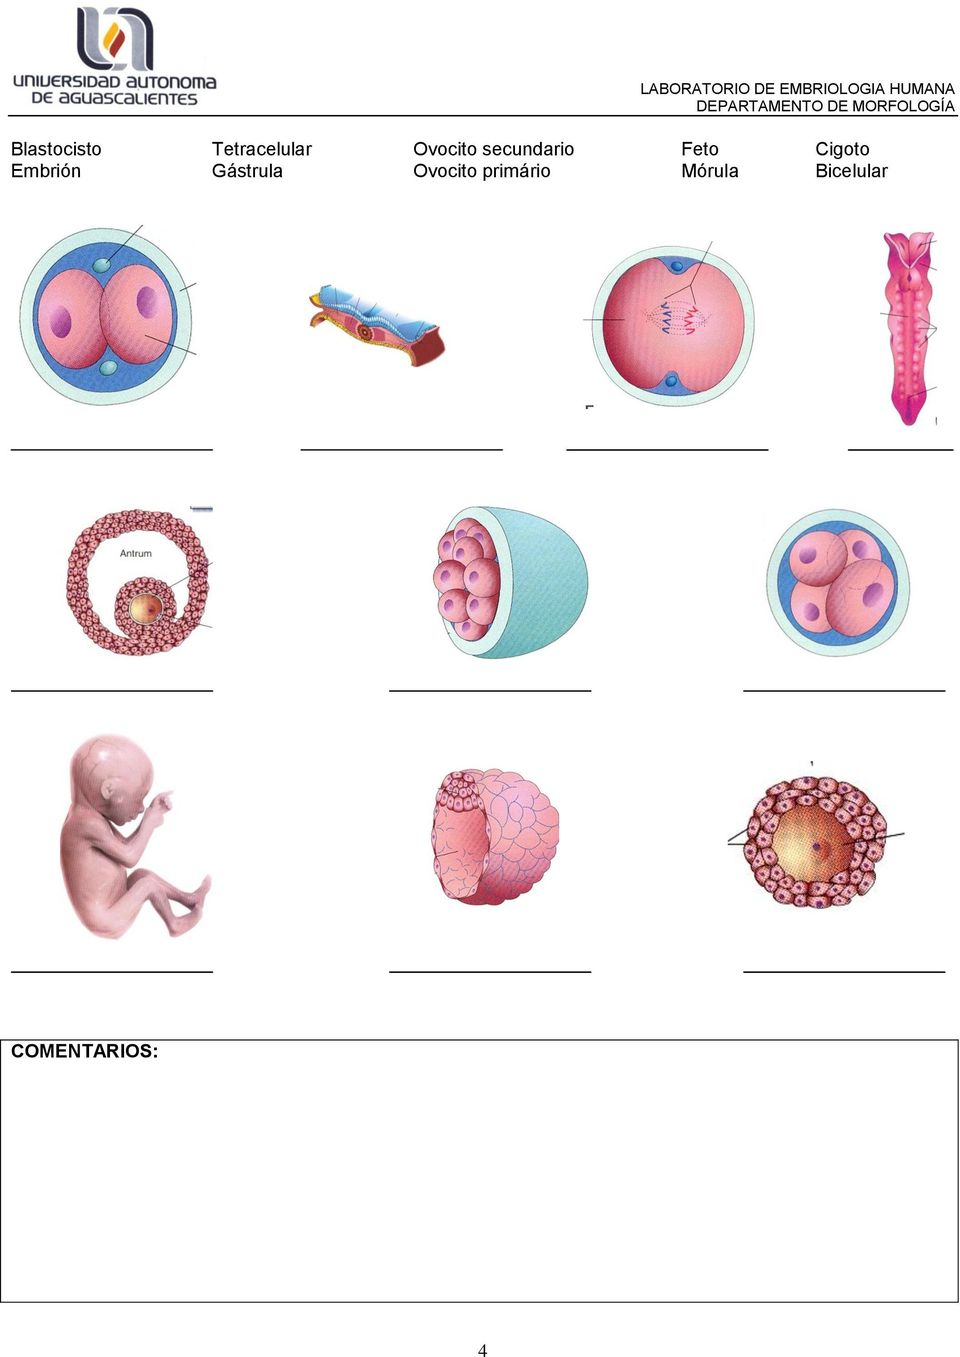 Embrión Gástrula Ovocito